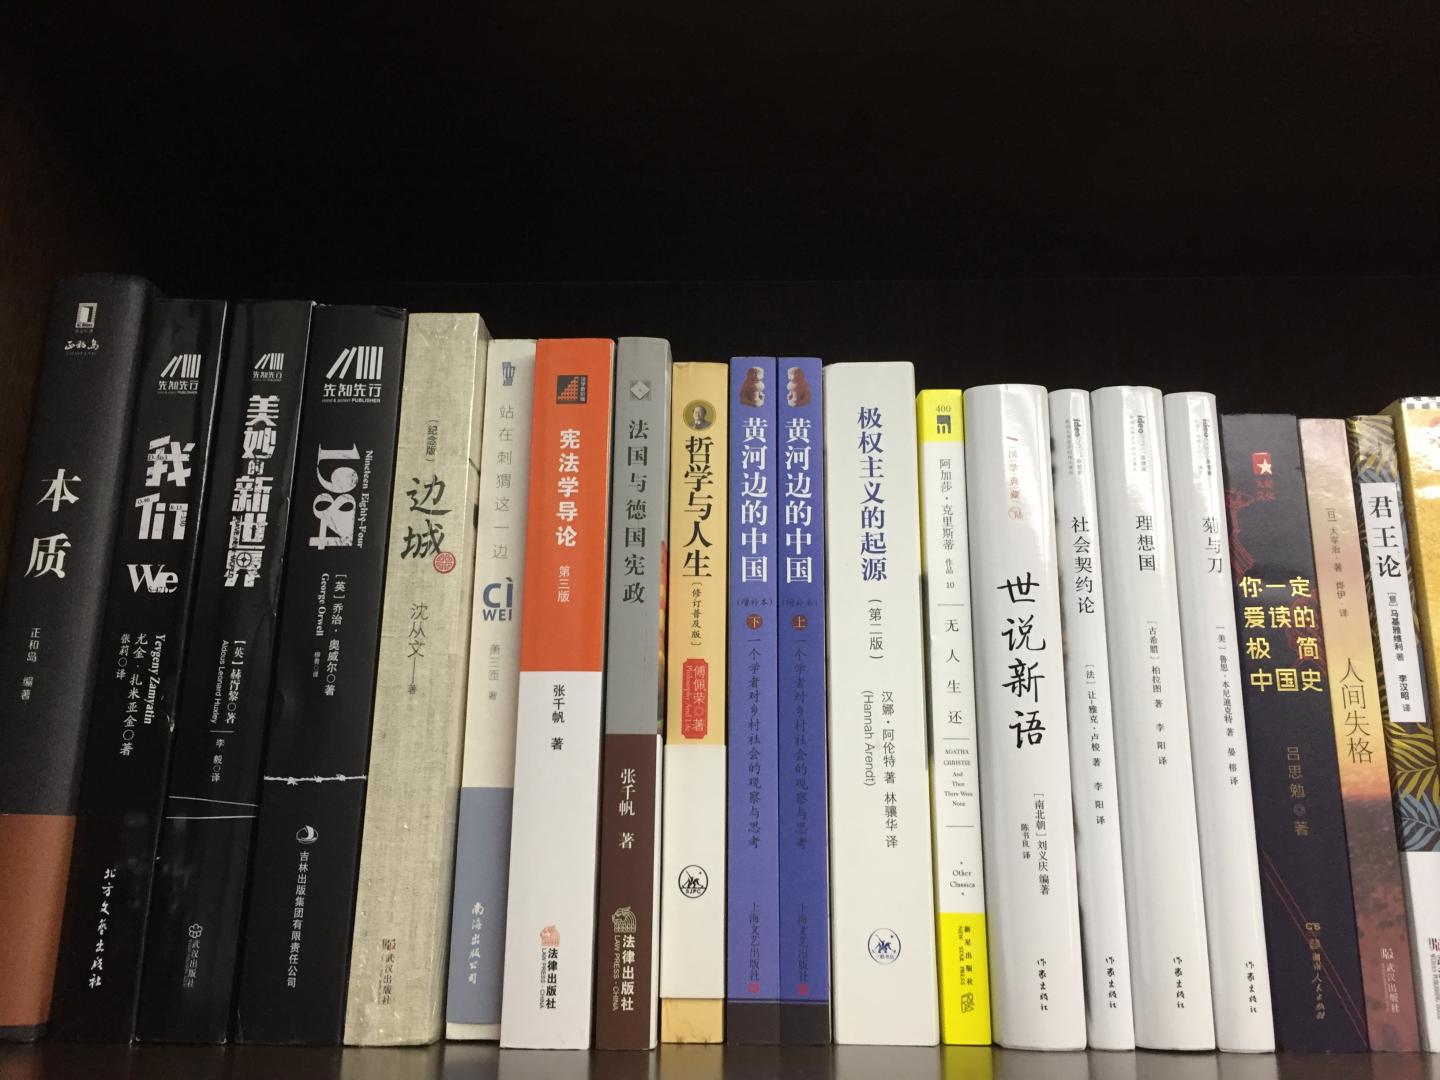 现在内地的图书价格越来越贵，都快赶上香港了，还好有，做活动的时候买还是很划算的。趁着活动买了一批书，慢慢看吧。